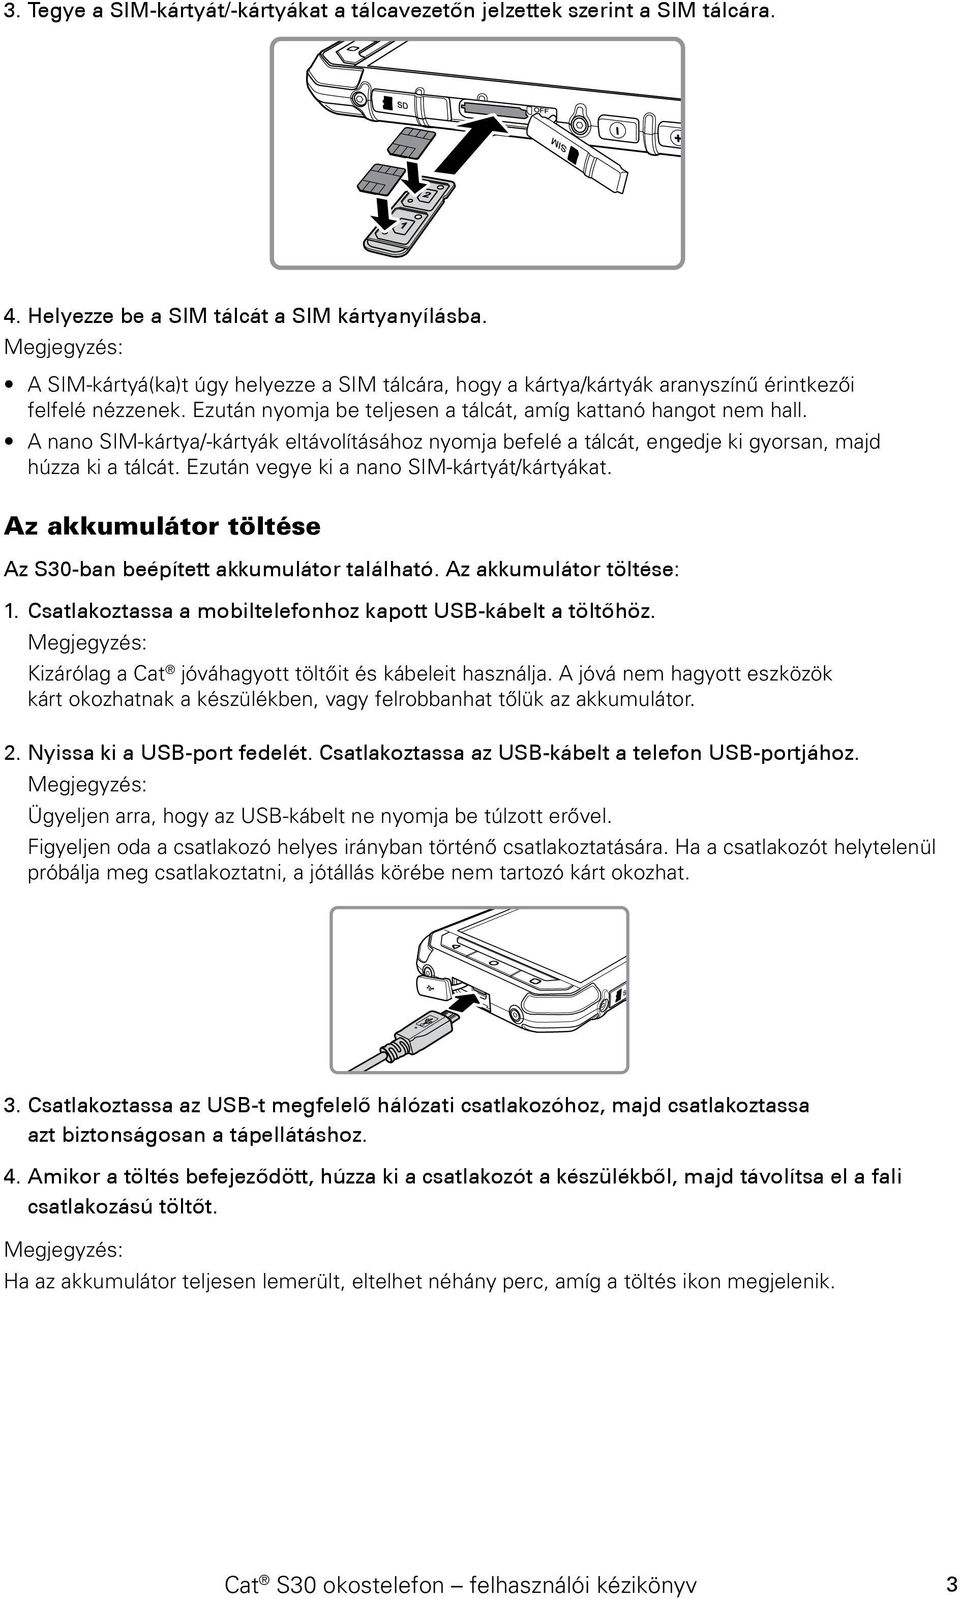 Cat S30 okostelefon Felhasználói kézikönyv - PDF Free Download